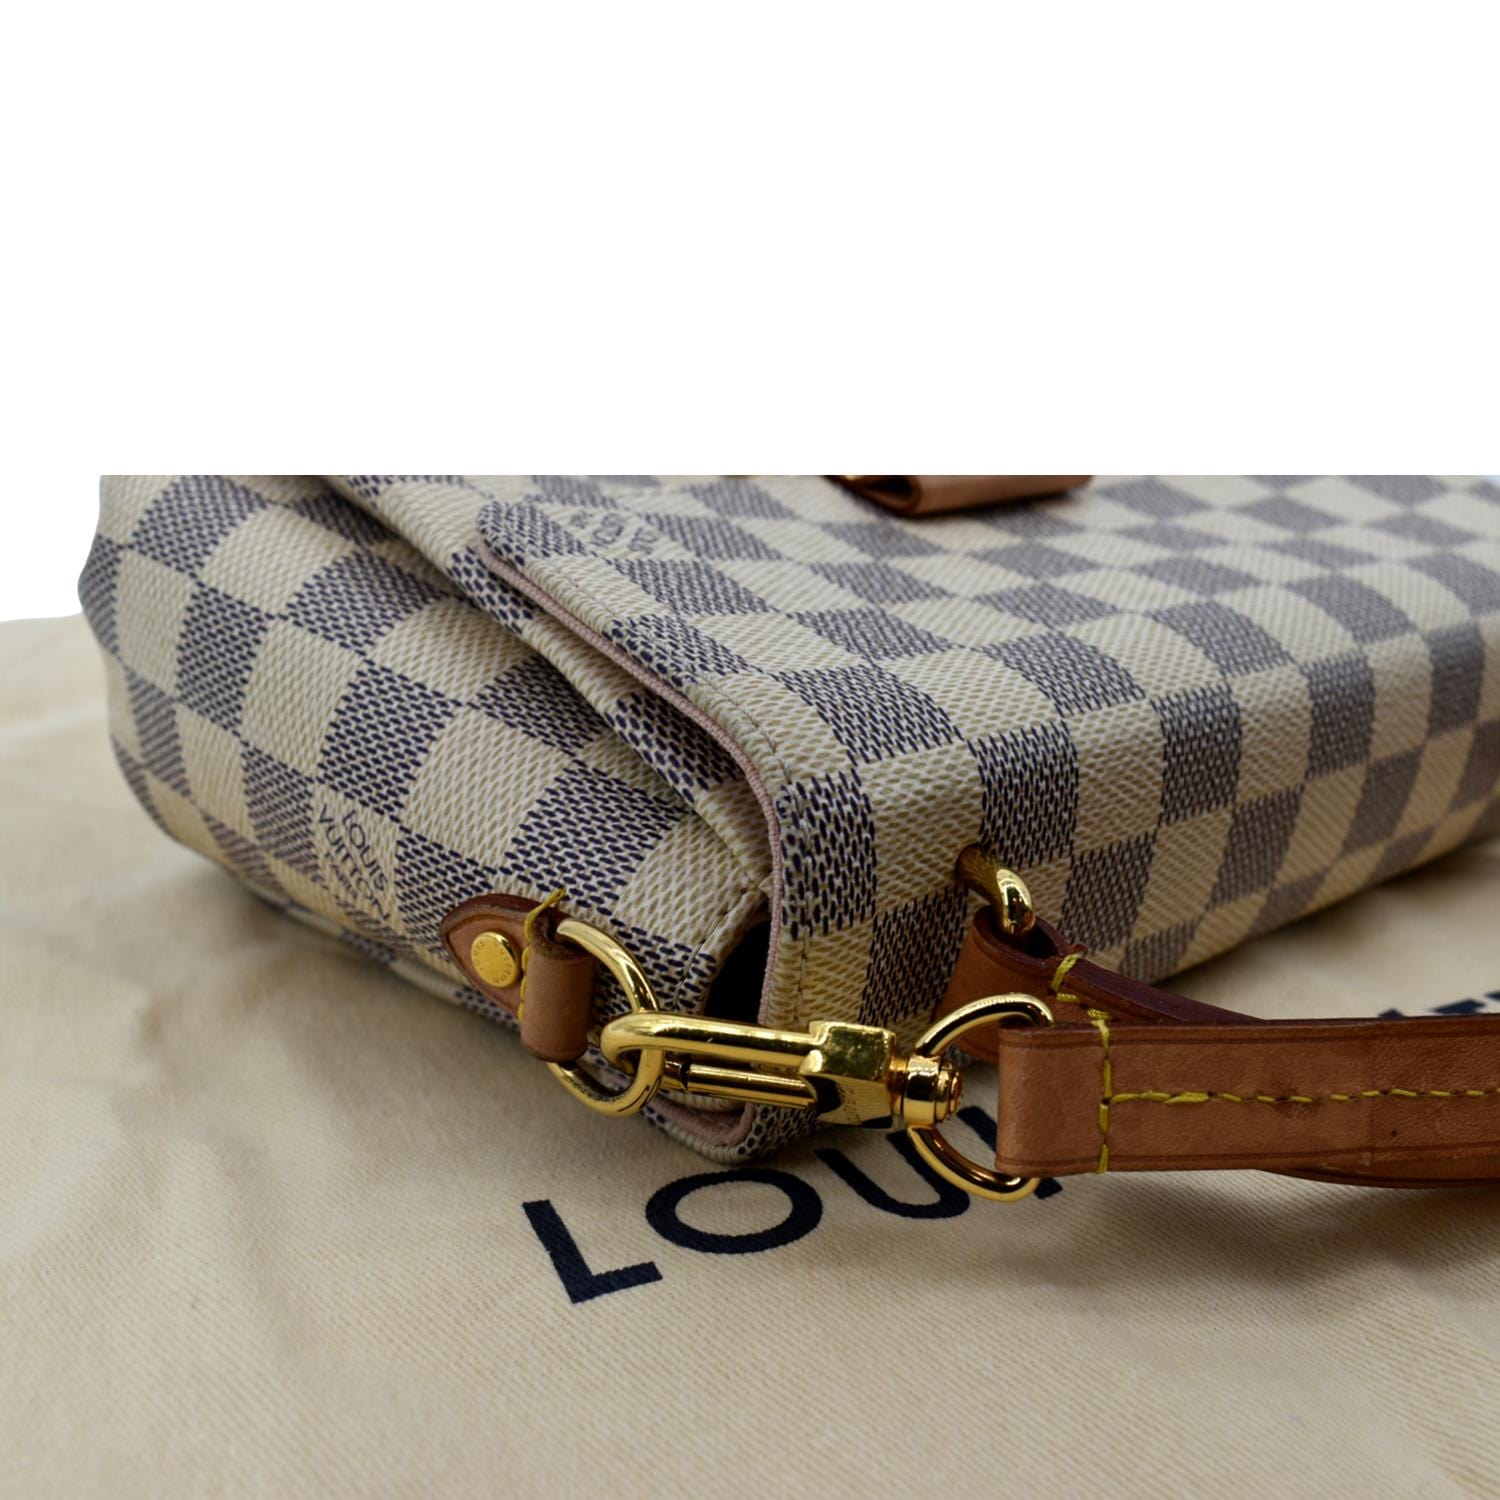 Louis Vuitton Vintage - Damier Azur Croisette Bag - White Ivory Blue -  Damier Leather Handbag - Luxury High Quality - Avvenice